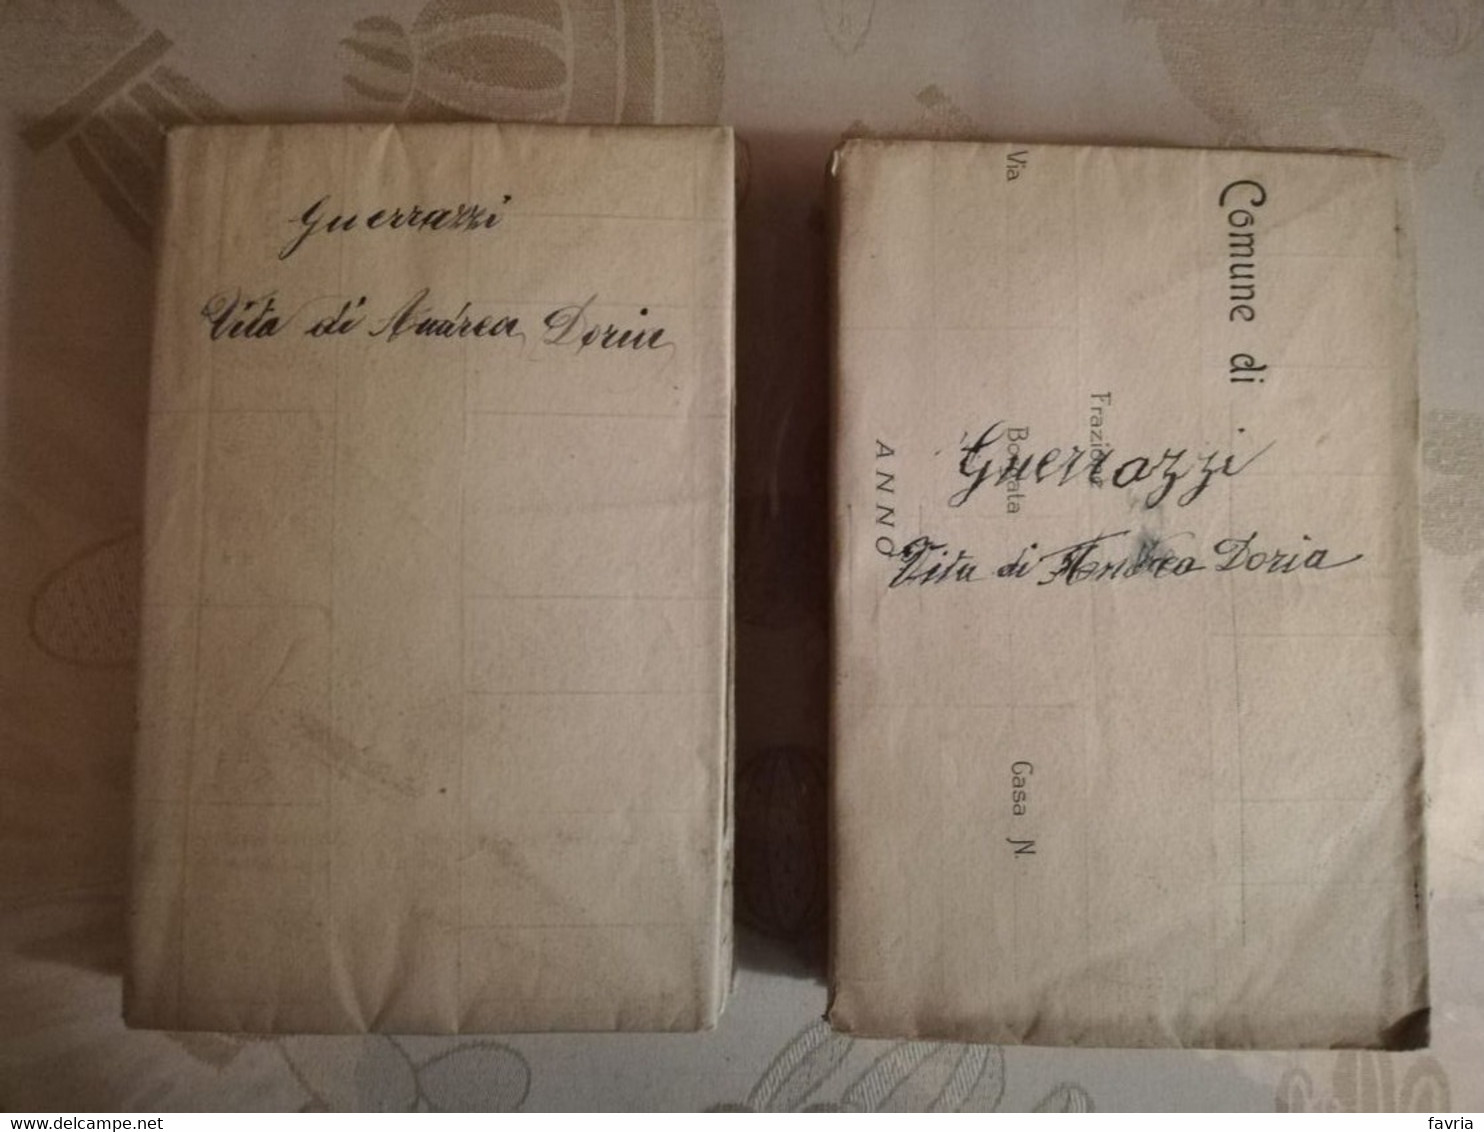 Andrea Doria 2 Volumi - 1864  Di F. D. Guerrazzi # Casa Editrice Italiana Di M. Guigoni # 396+ 386pagine - Libri Antichi